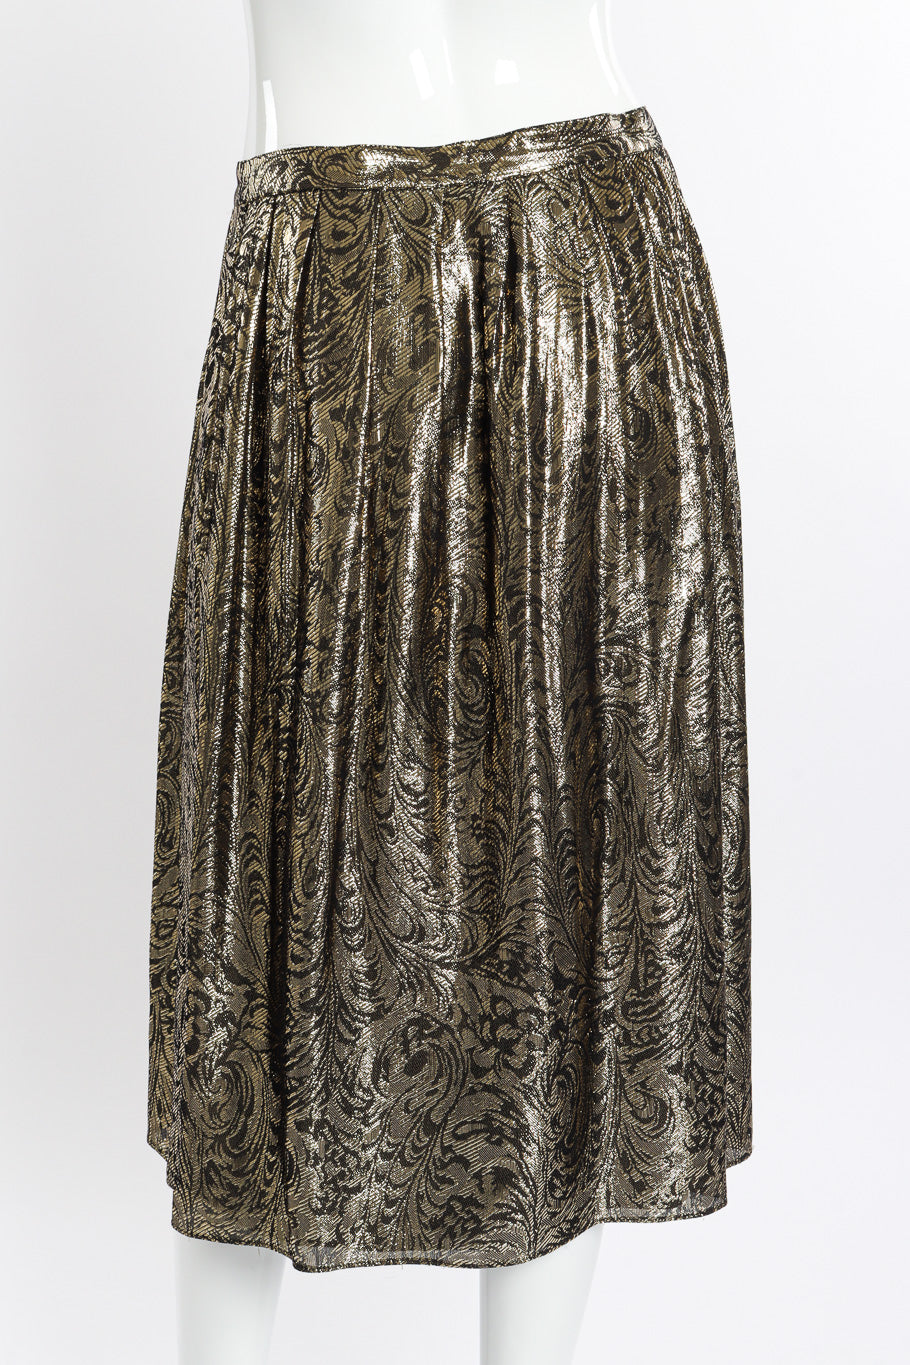 Vintage Nolan Miller Lamé Jacquard Blouse & Skirt Set skirt back on mannequin closeup @recessla